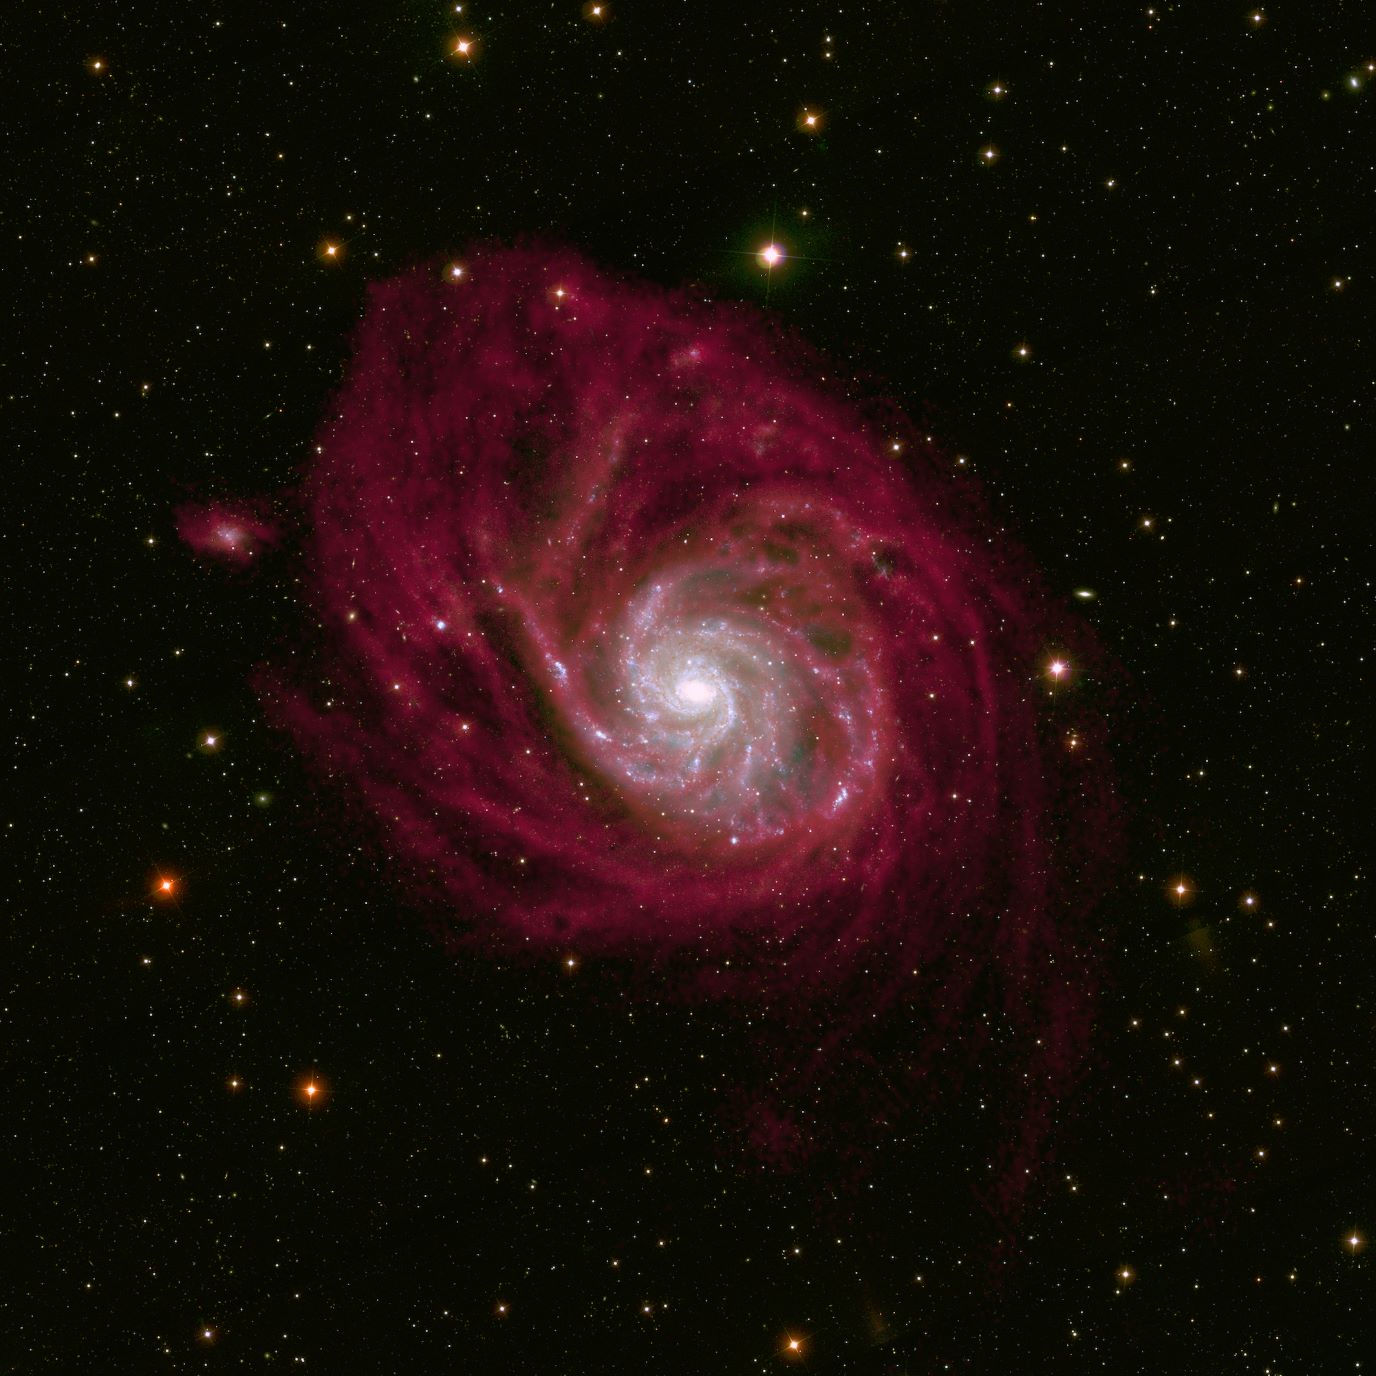 Beeld van het nabije sterrenstelsel M101 dat wordt onderzocht in dit project (afbeelding: T. Oosterloo)